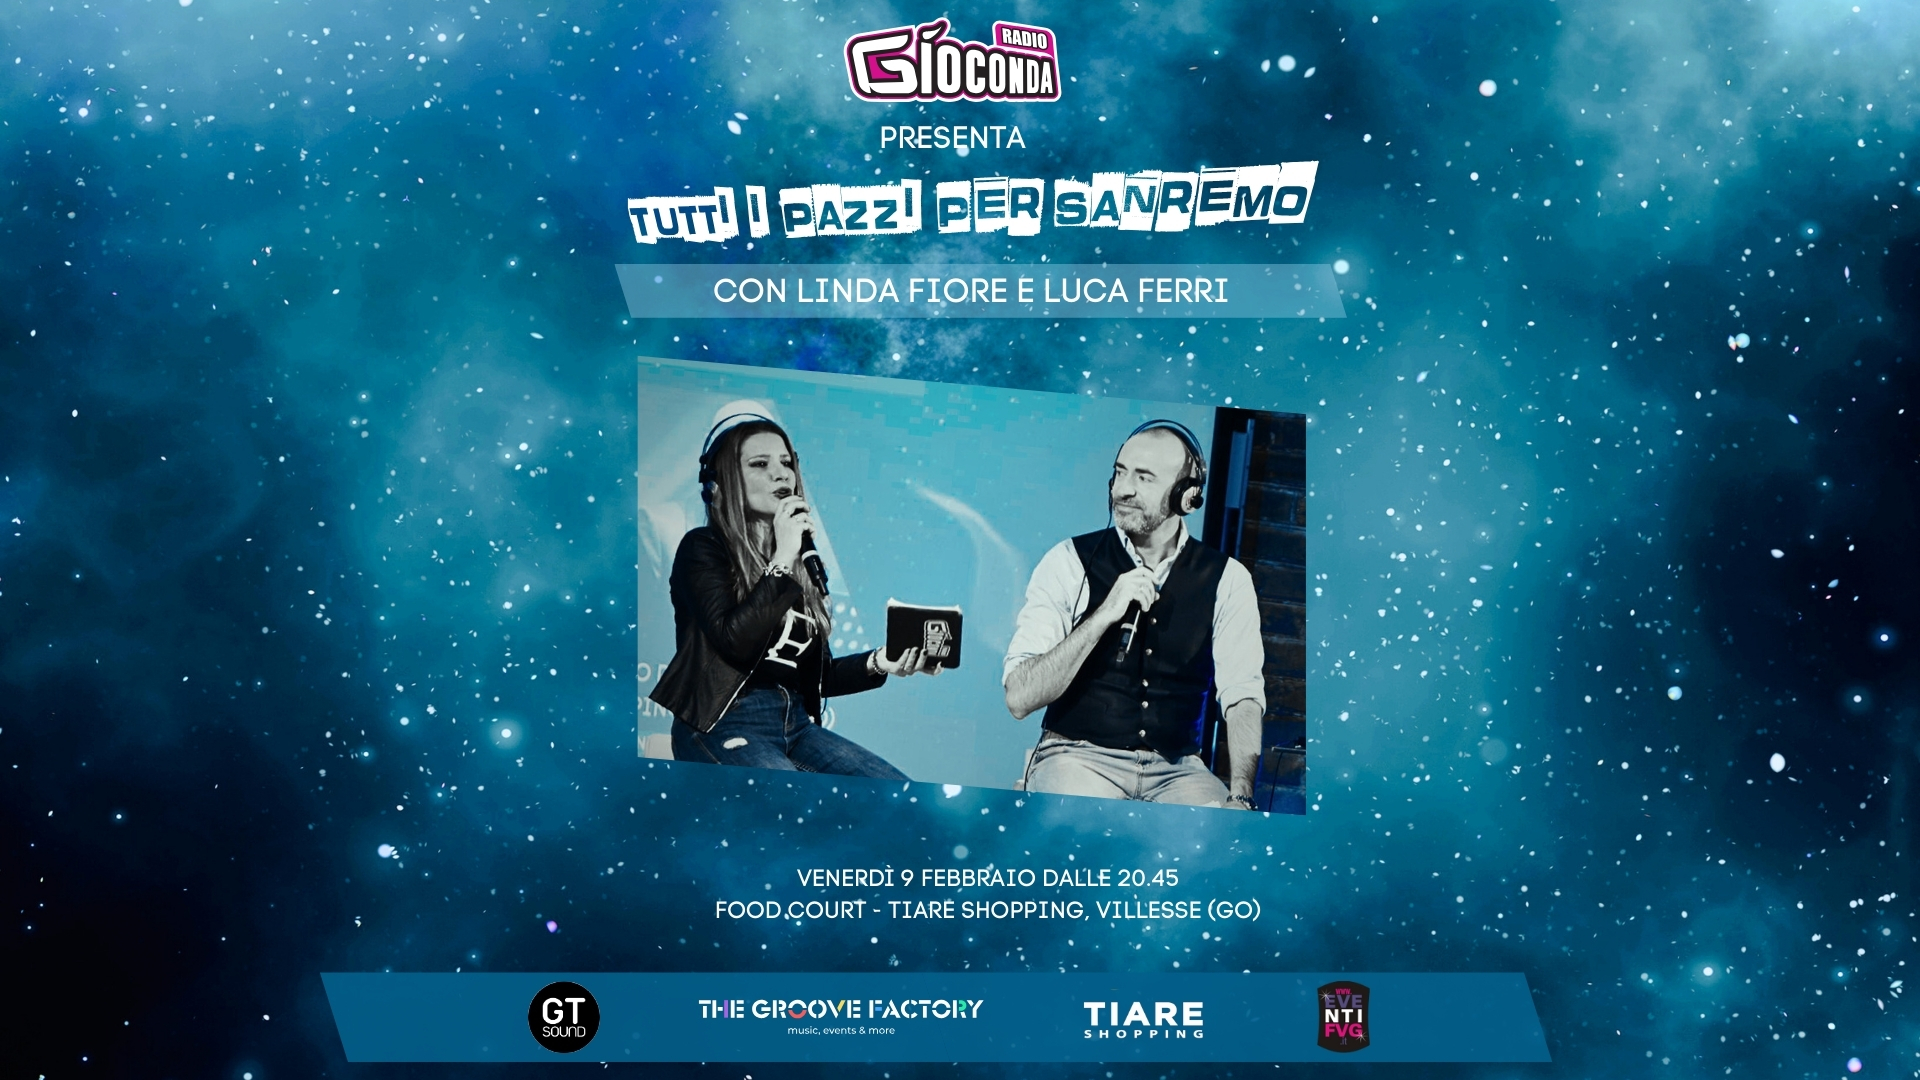 Venerdì 9 febbraio, alle 19.30, si accenderà “Tutti i pazzi per Sanremo”, lo speciale di Radio Gioconda dedicato alla kermesse canora più seguita d’Italia, condotto da Linda Fiore e Luca Ferri.